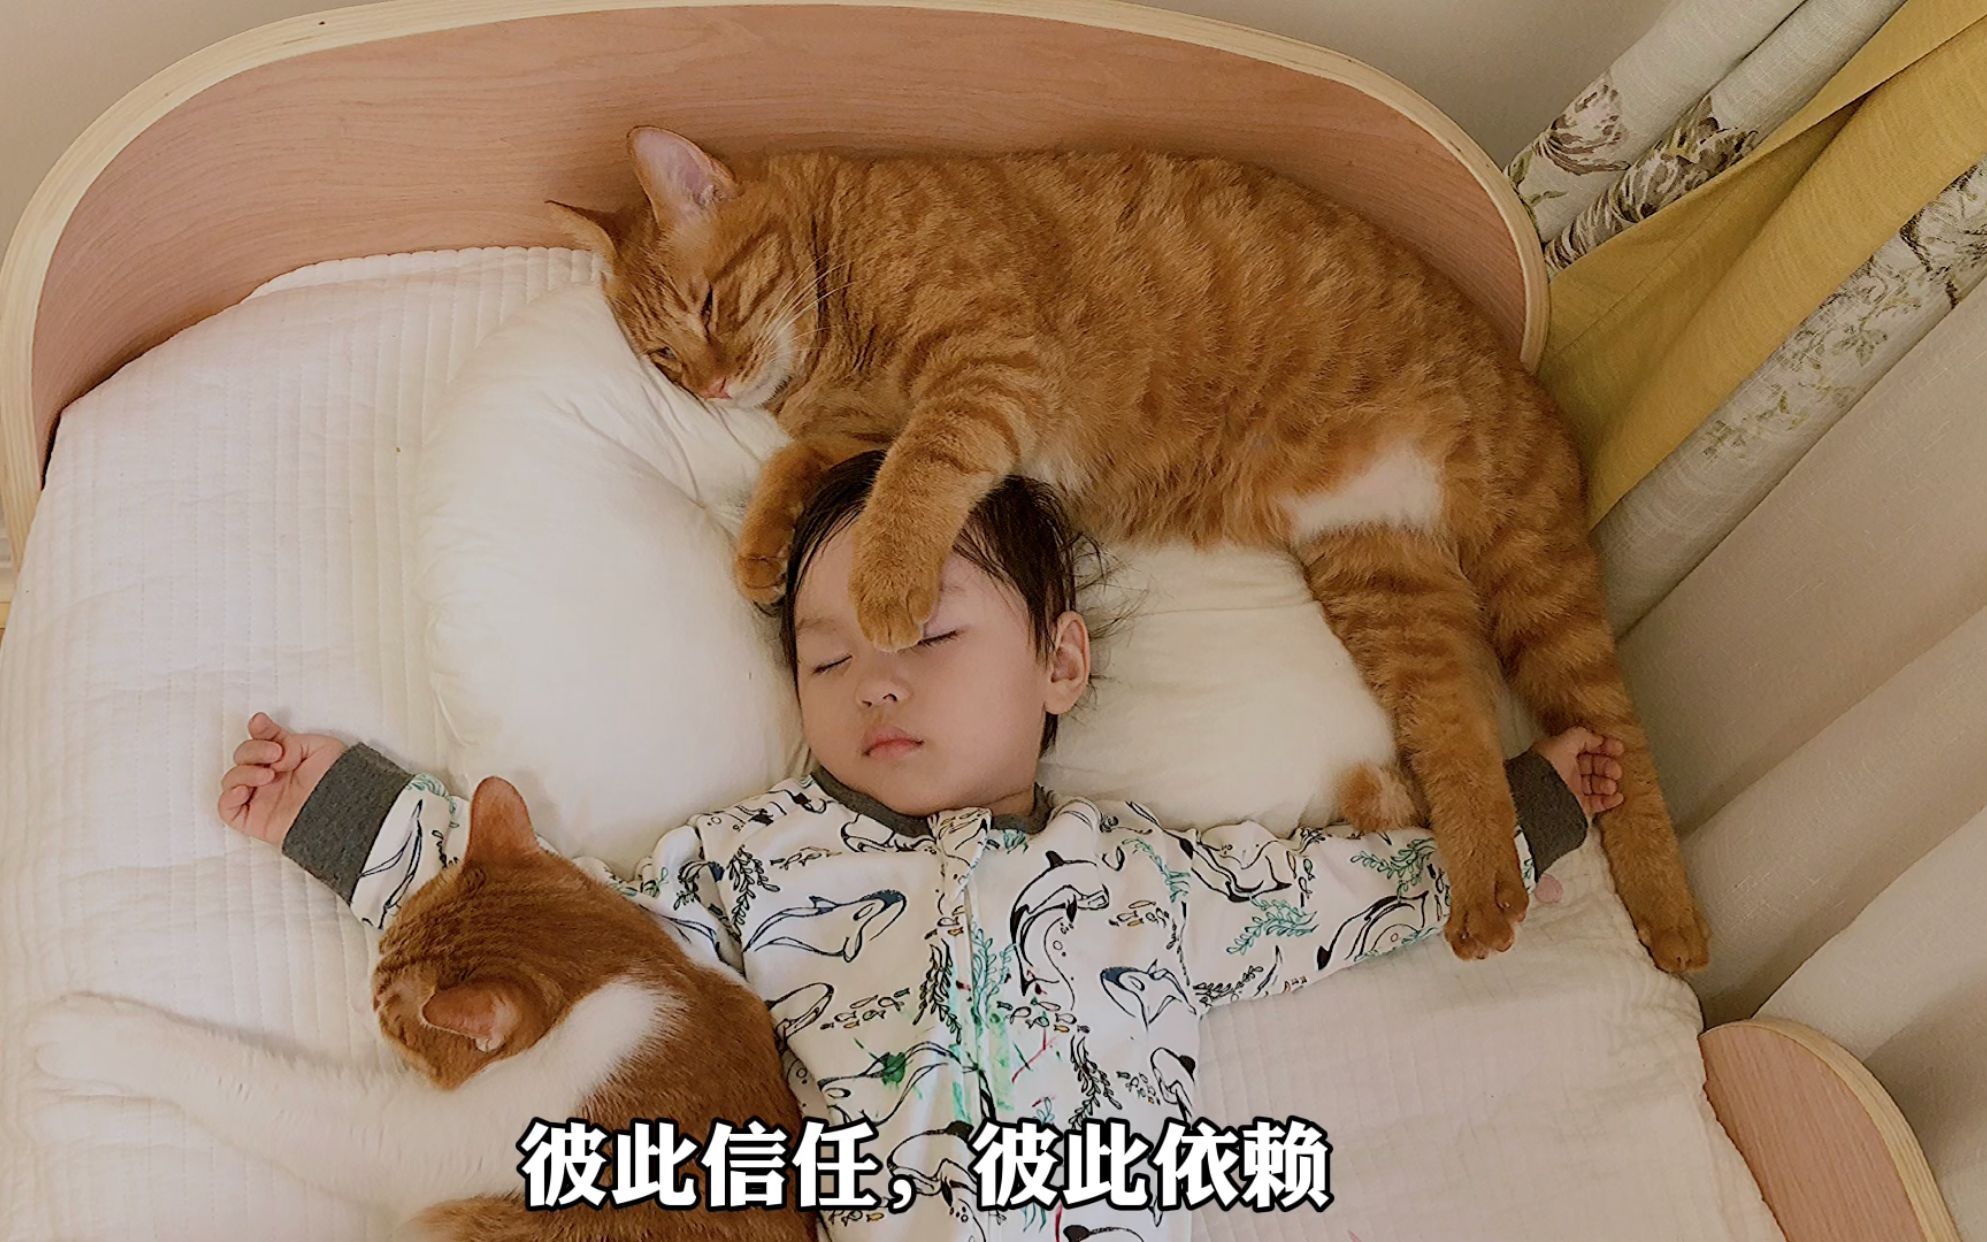 捡回来的小橘猫喜欢和人类幼崽抢枕头，抢着抢着就长大了